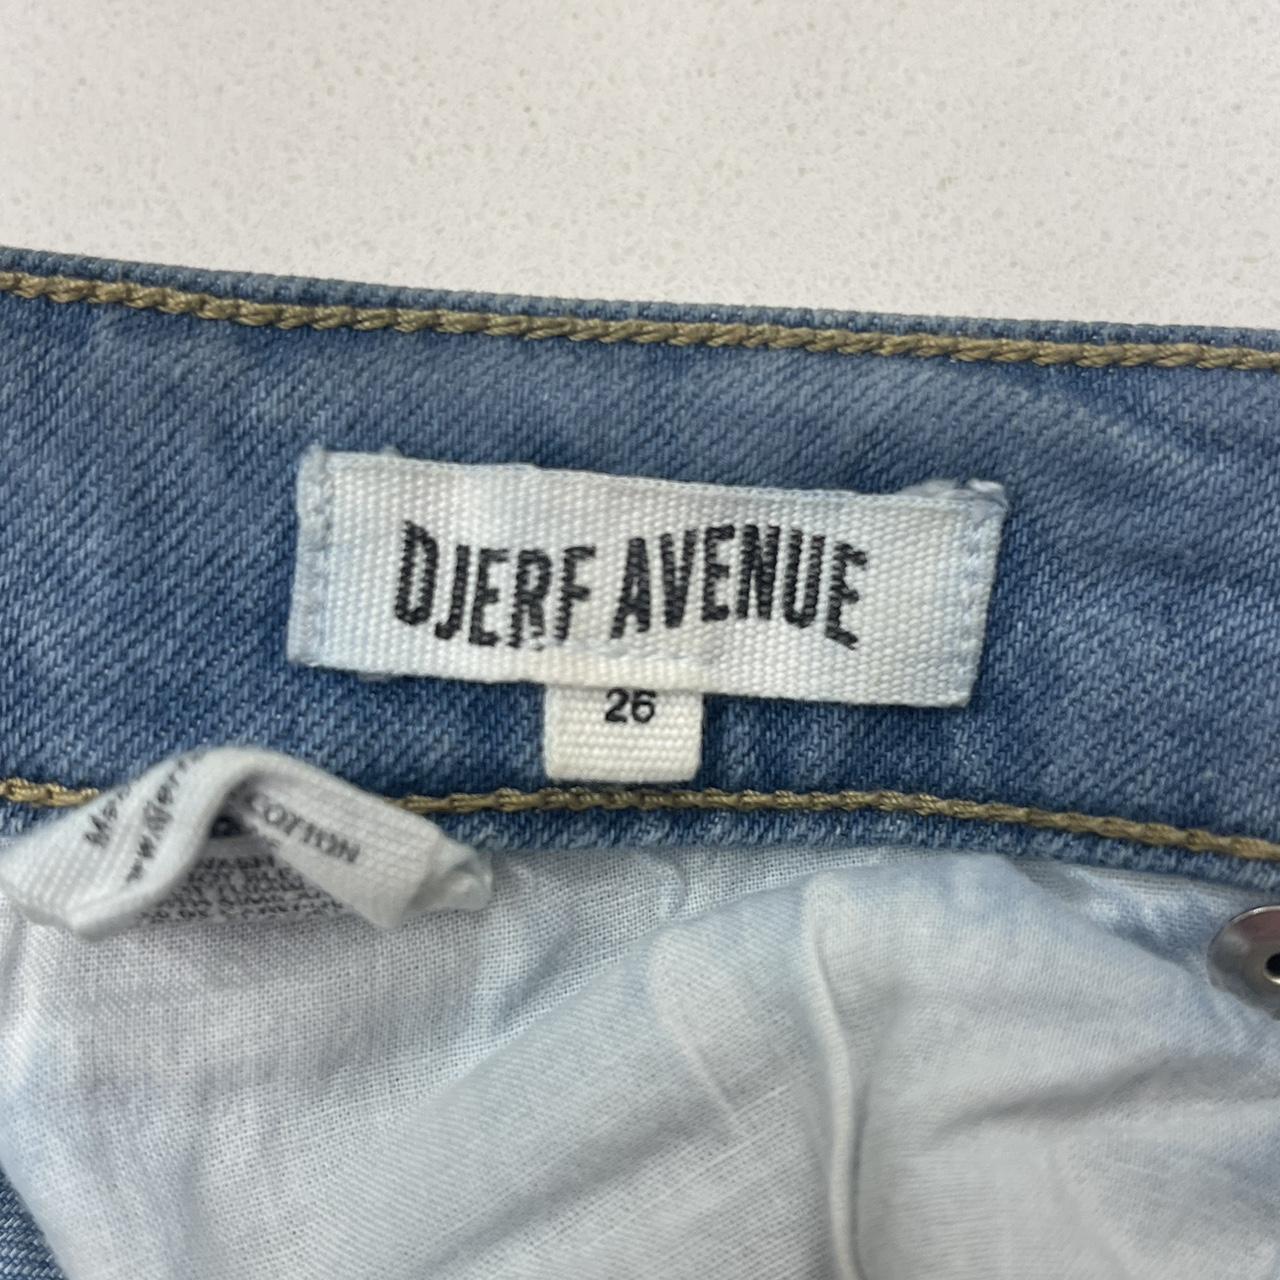 Djerf Avenue Women's Jeans (7)